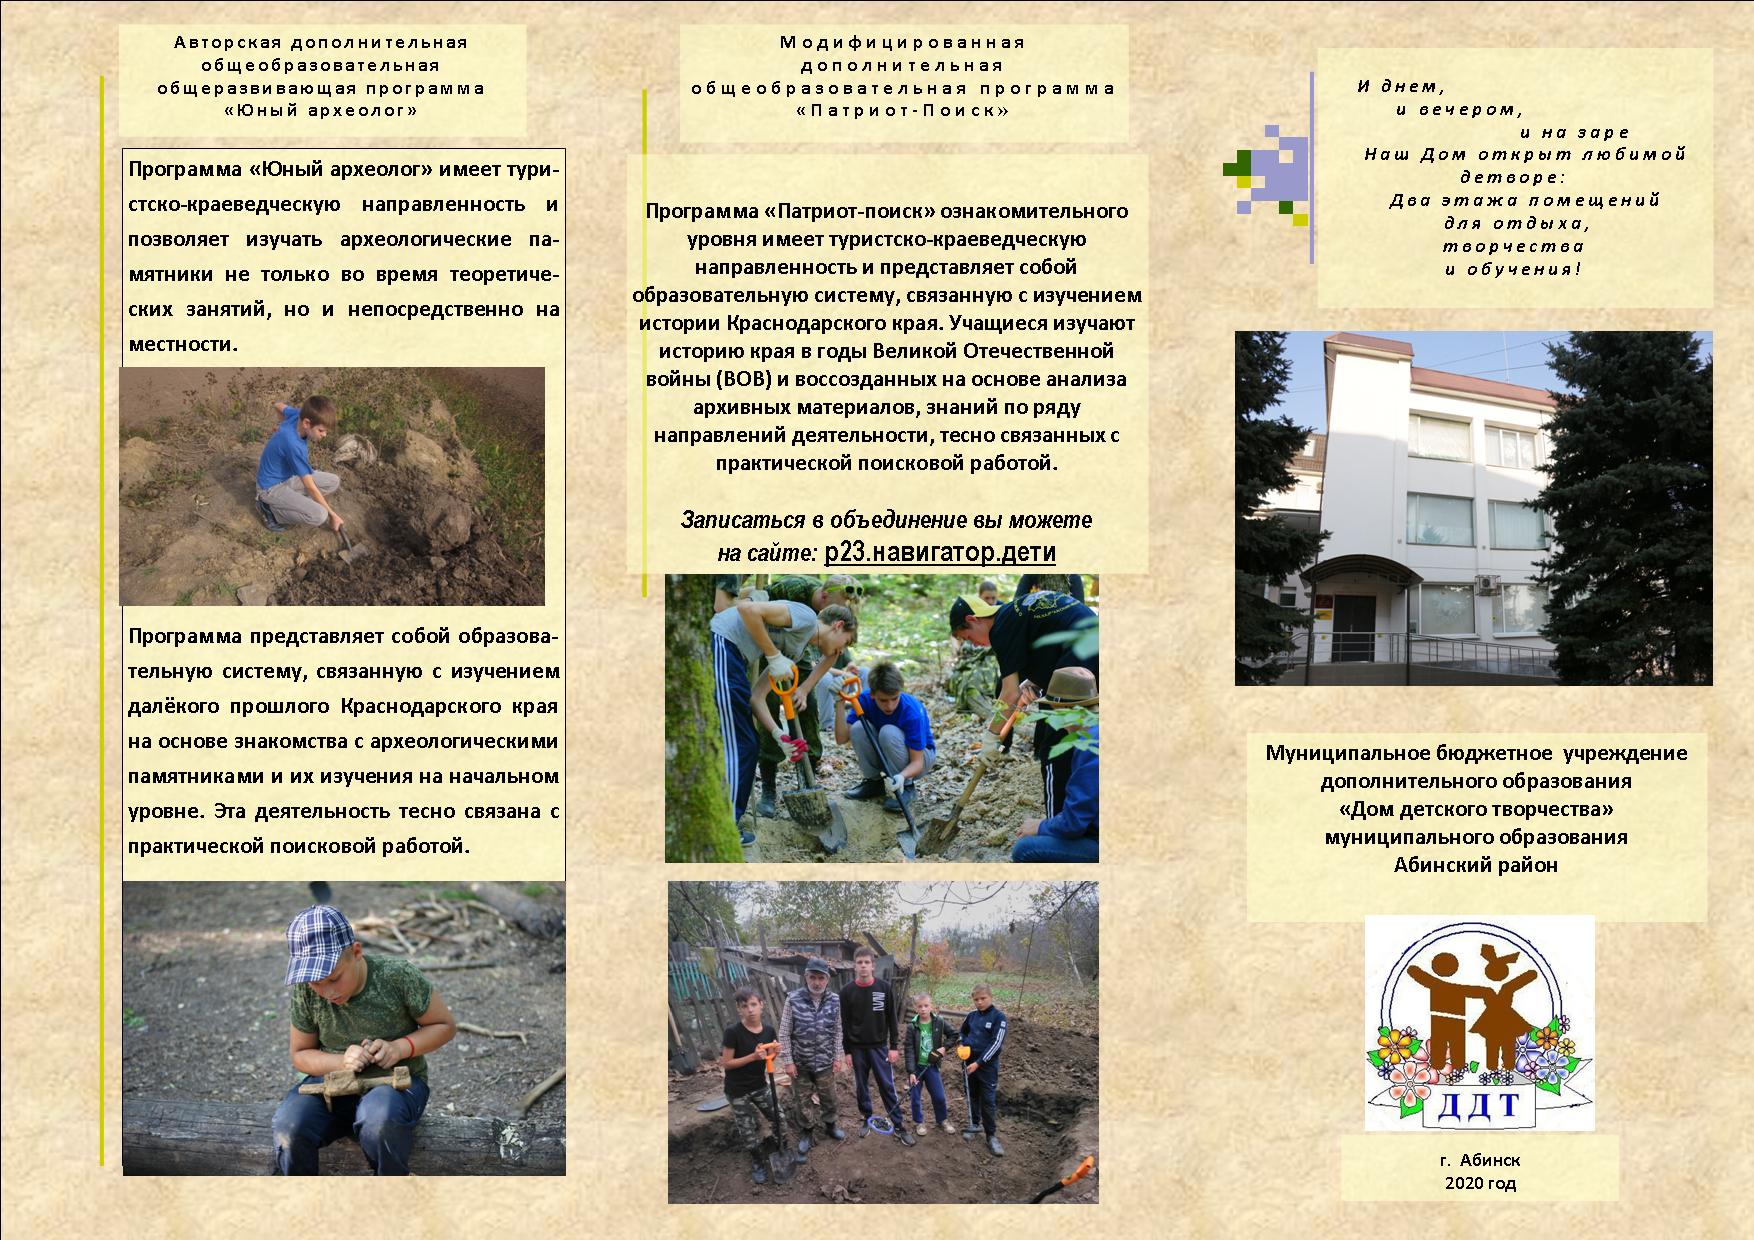 Аннотации программ - Центр дополнительного образования детей, malino-v.ru